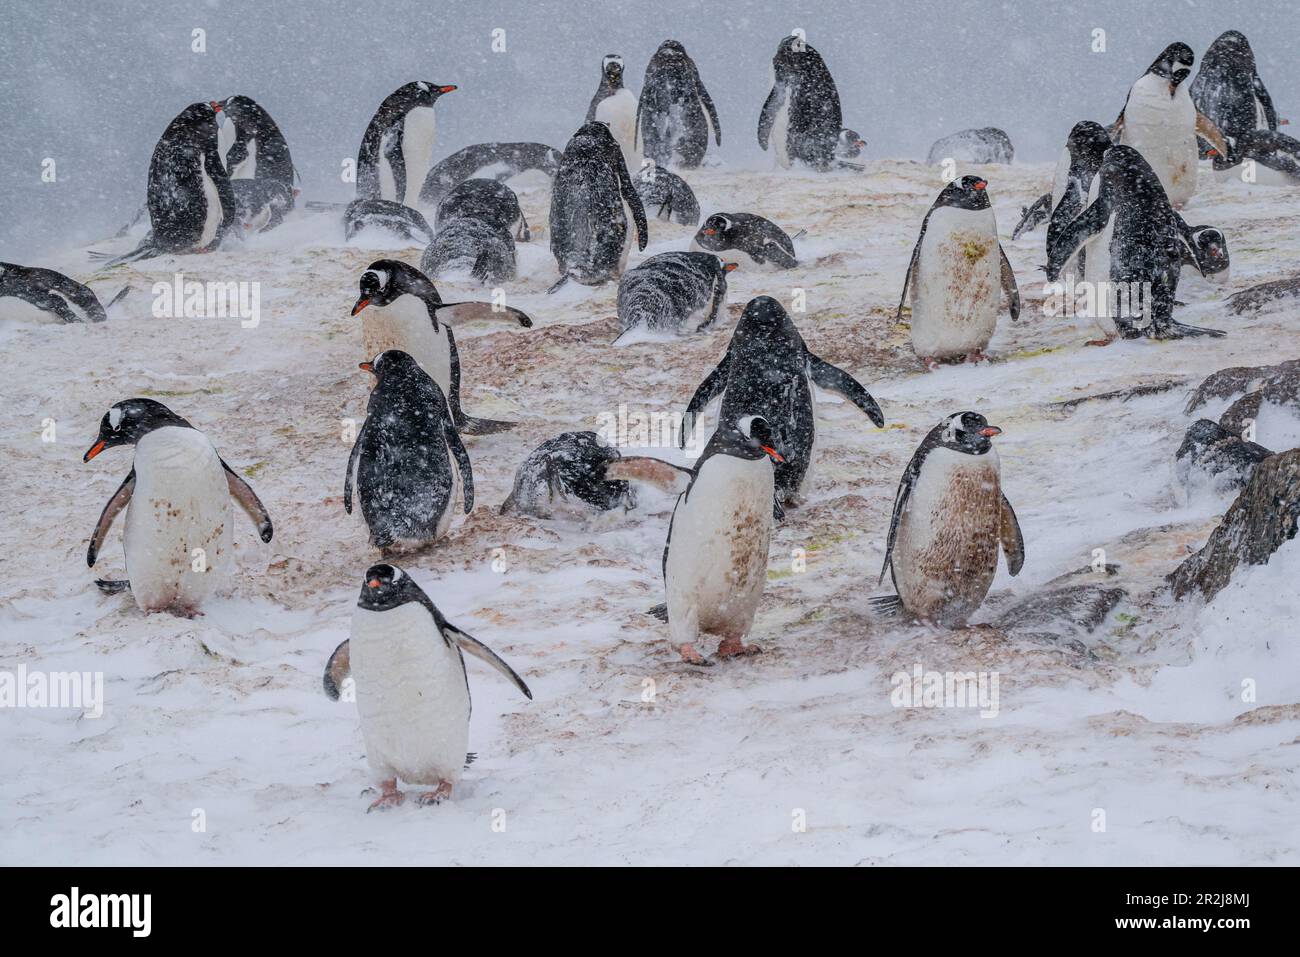 Colonie de pingouins de Gentoo (Pygoscelis papouasie), Mikkelsen, Île Trinity, Antarctique, régions polaires Banque D'Images